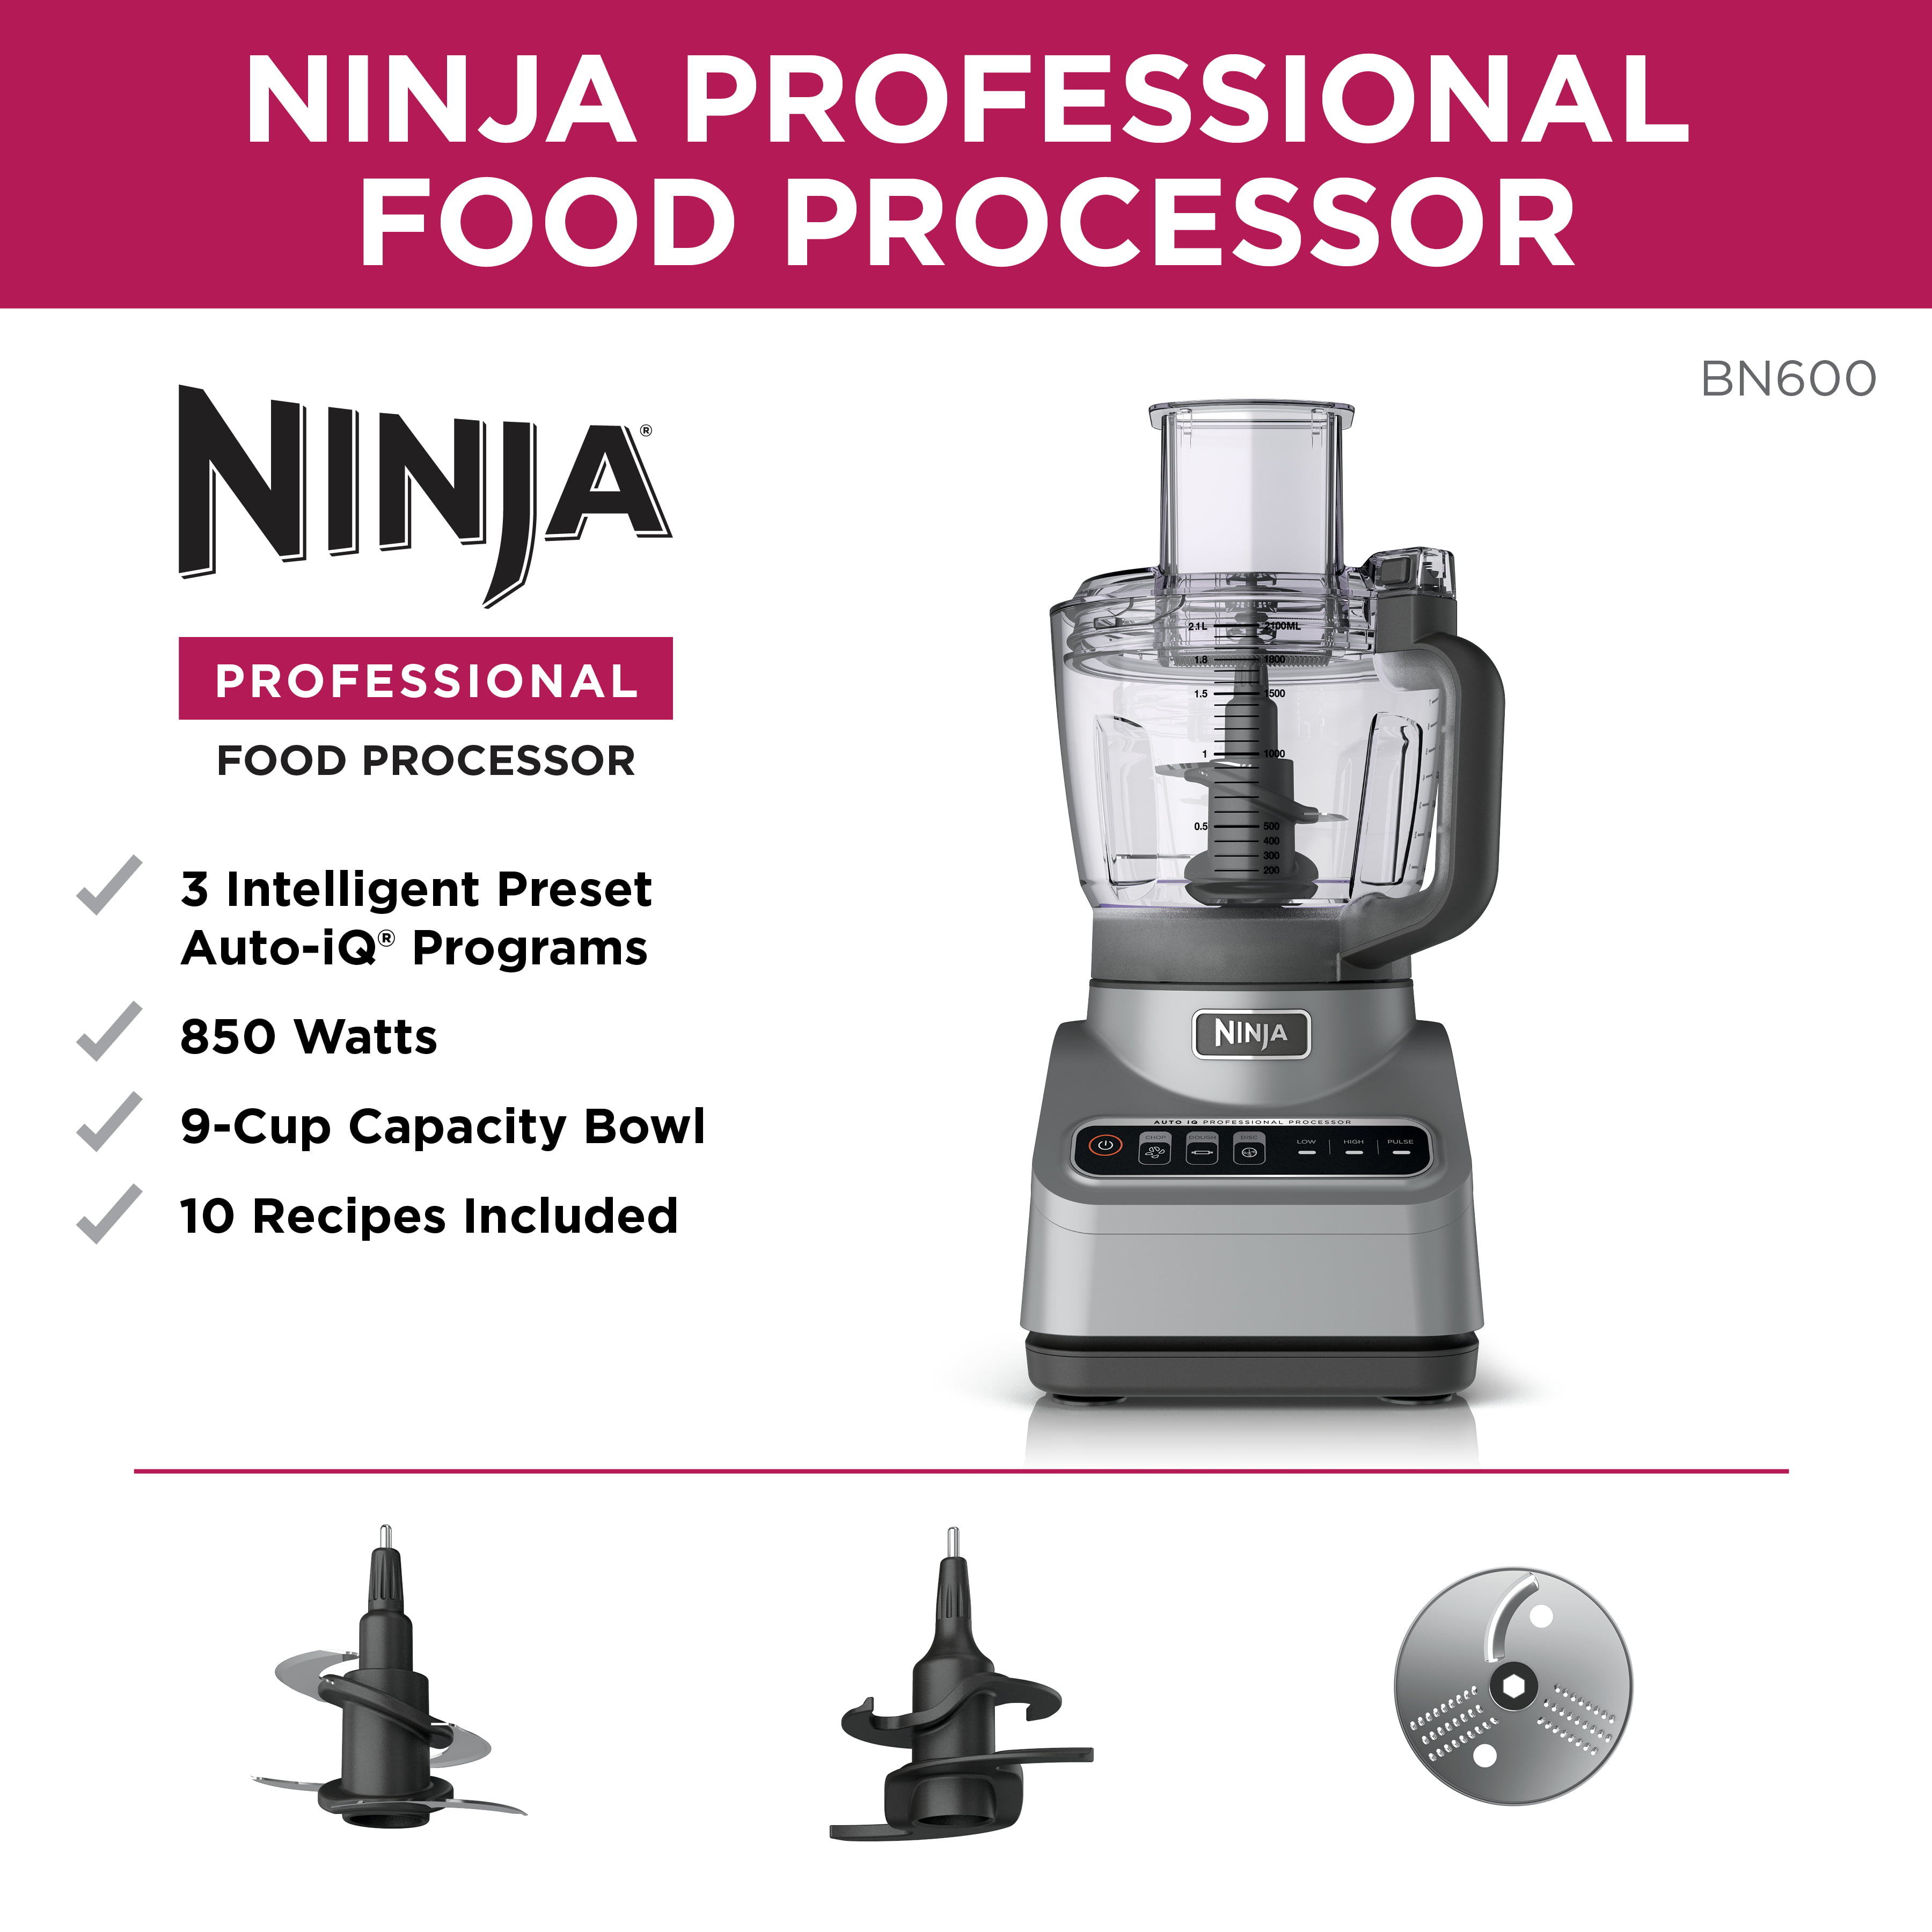 Ninja Pro Food Processor, 850W, 9-Cup, Auto-iQ